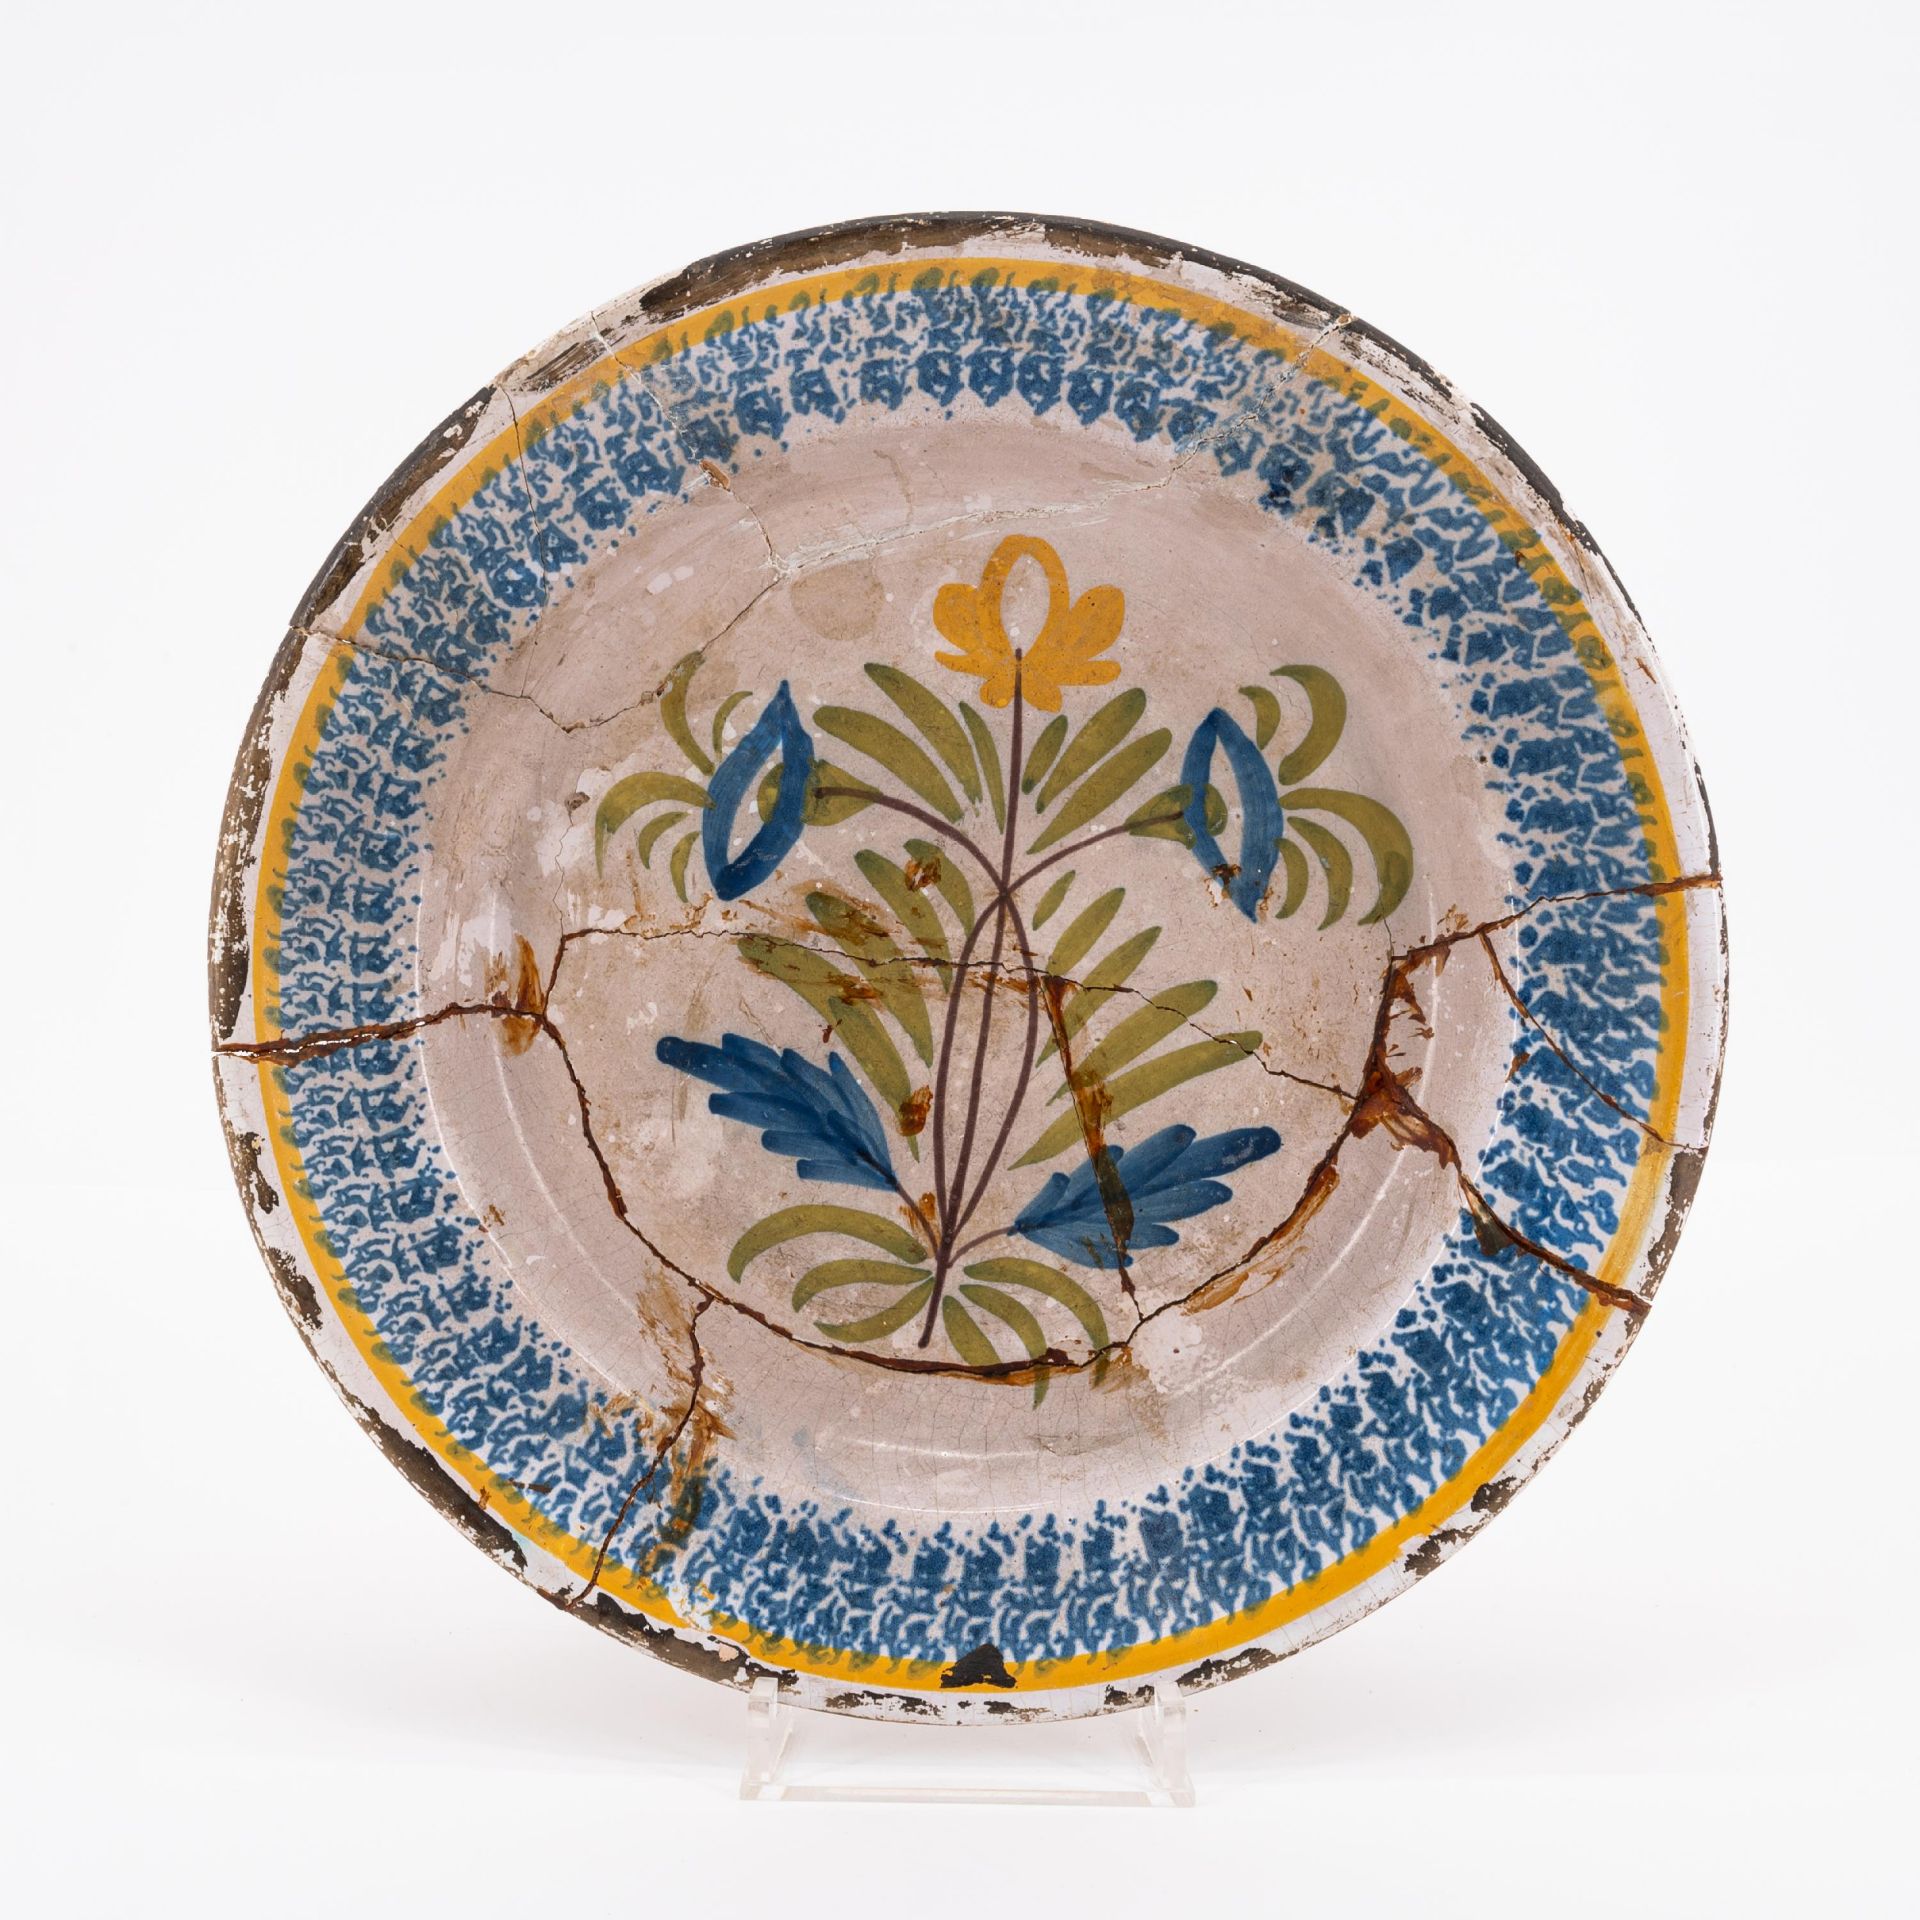 Frankreich und Delft: 4 Teller mit floralen Dekoren - Image 10 of 23